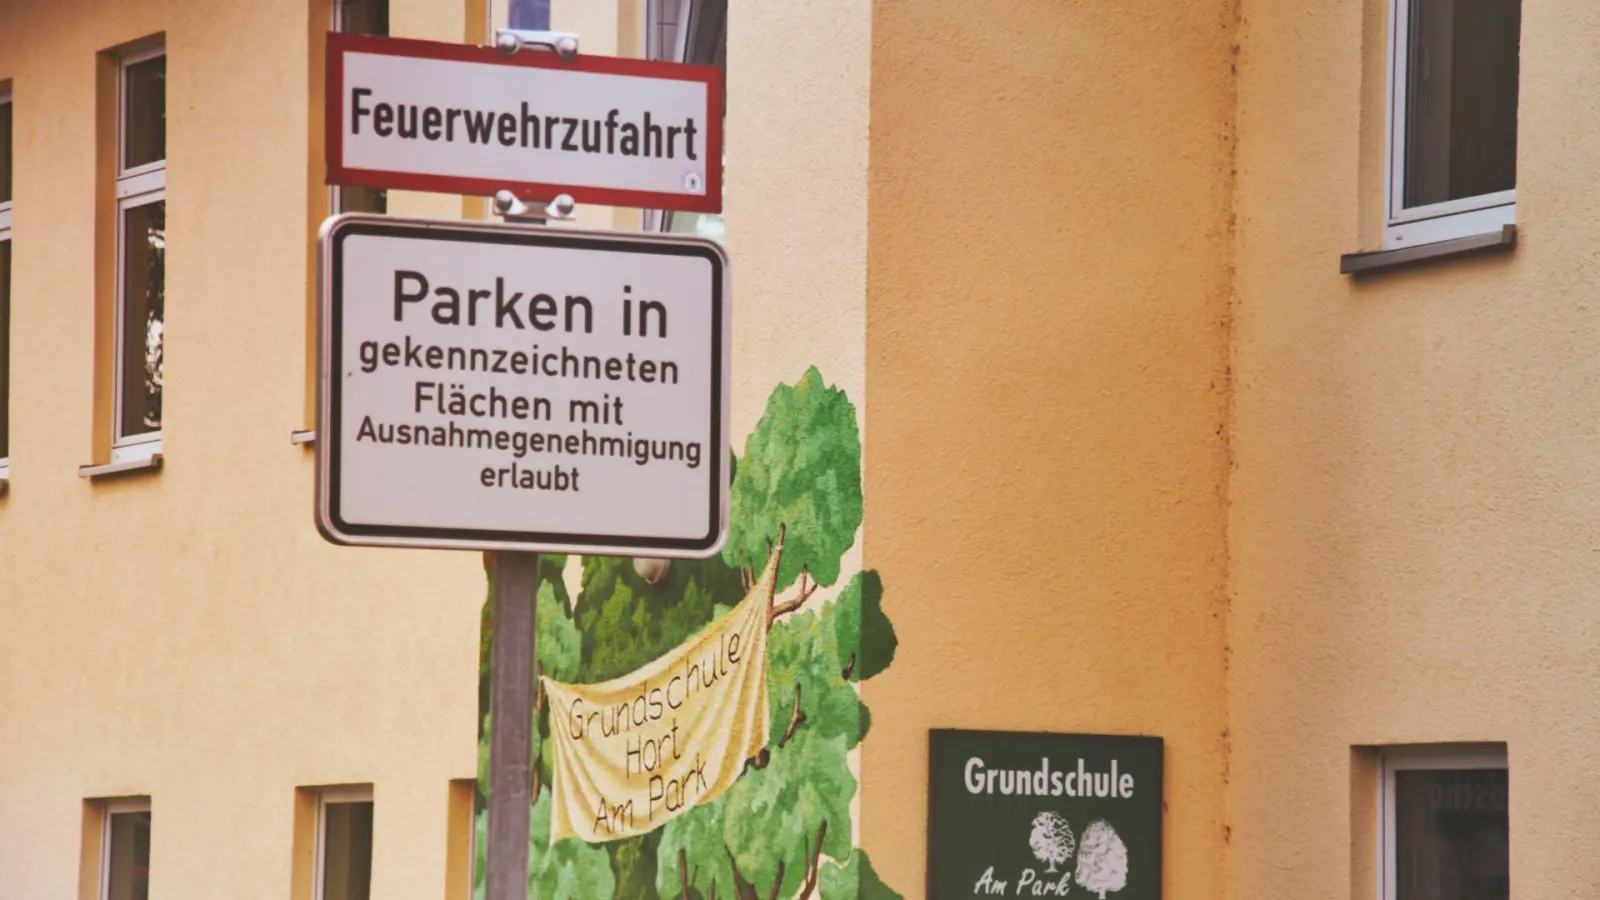 Knöllchen am ersten Schultag: Stadtratsfraktionen reagieren auf CDU-Mitteilung (Foto: taucha-kompakt.de)